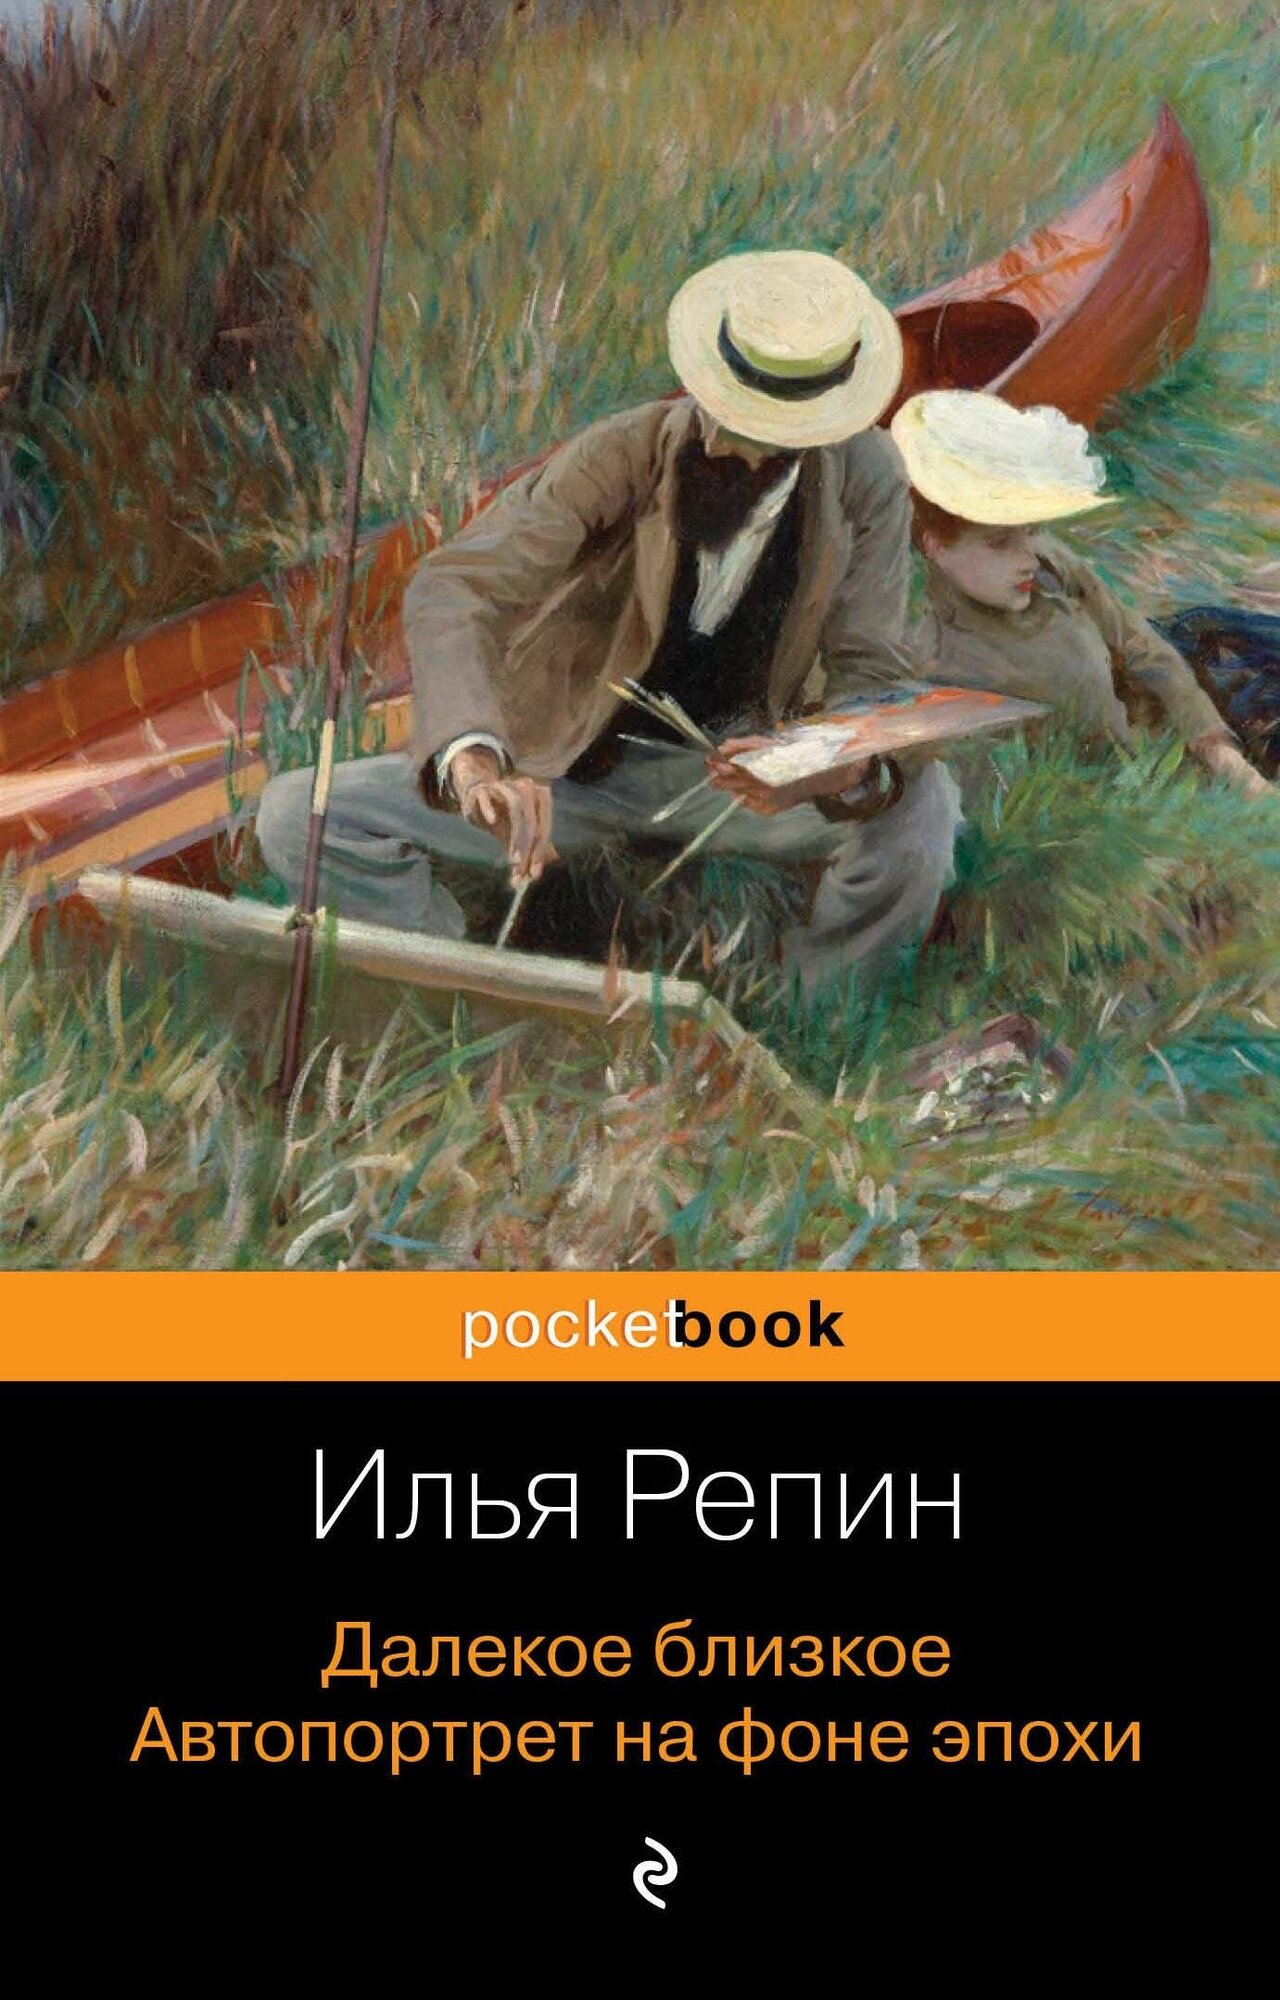 Репин Илья Ефимович. Далекое близкое. Автопортрет на фоне эпохи. Pocket book (обложка)